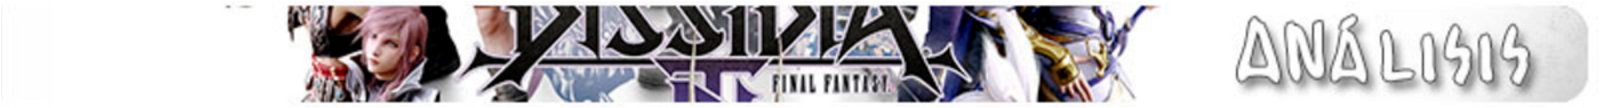 Análisis de Dissidia Final Fantasy NT – La fantasía en conjunto se disfruta mejor